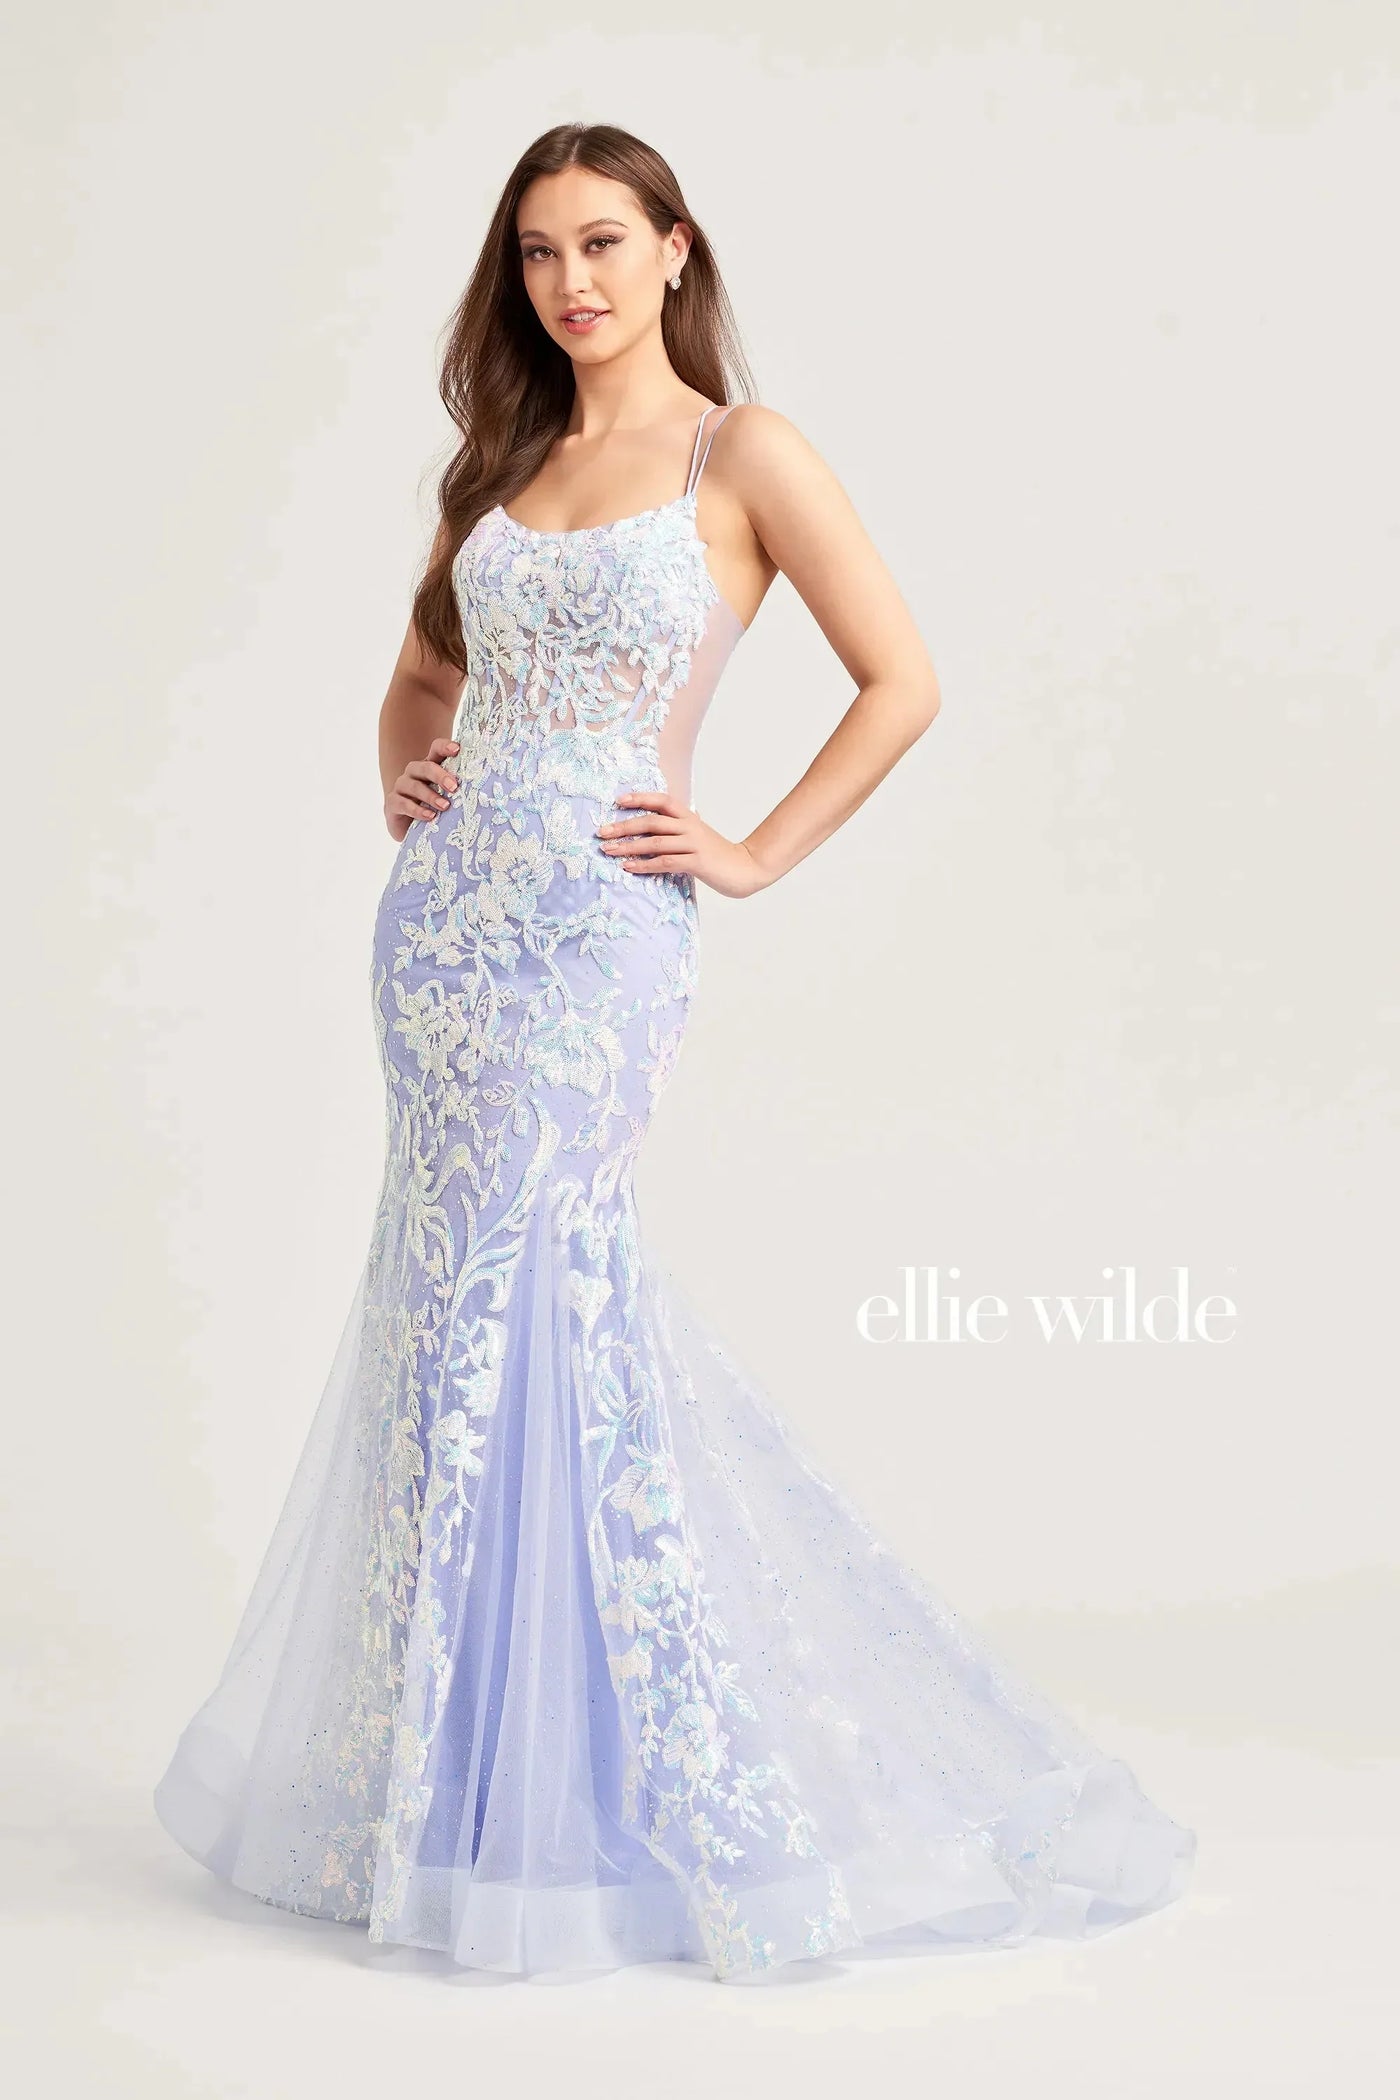 Ellie Wilde EW35008 - Sequin Scoop Evening Dress